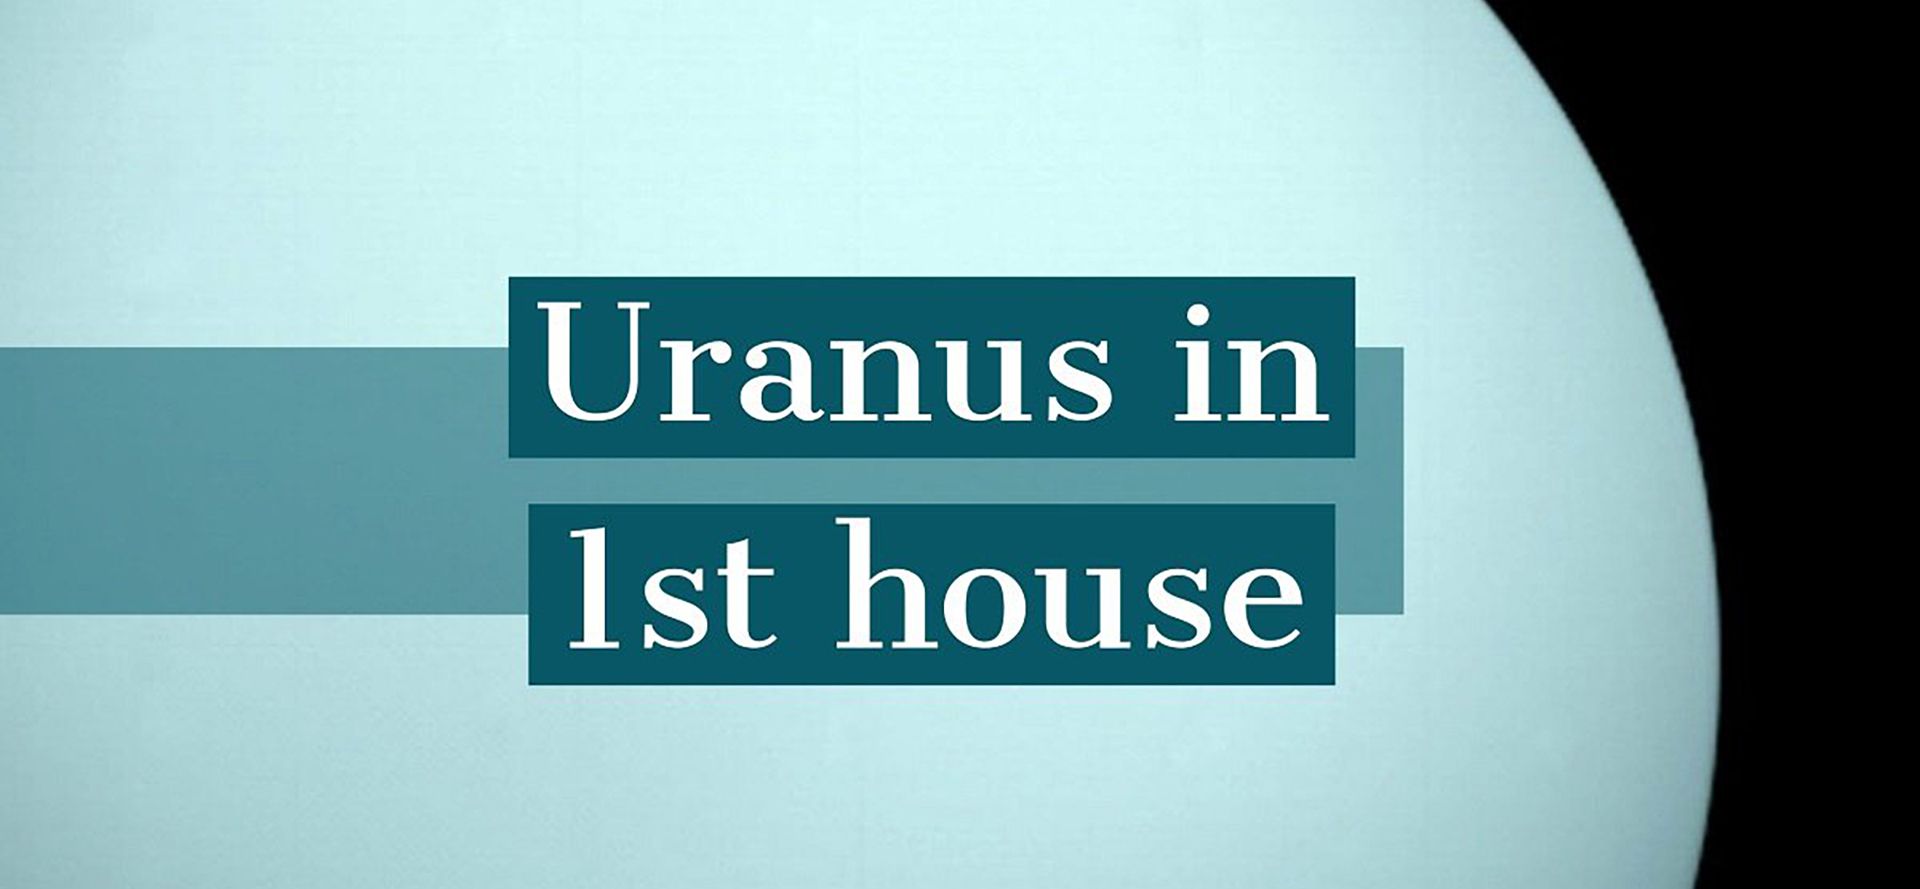 Uranus in 1st house.